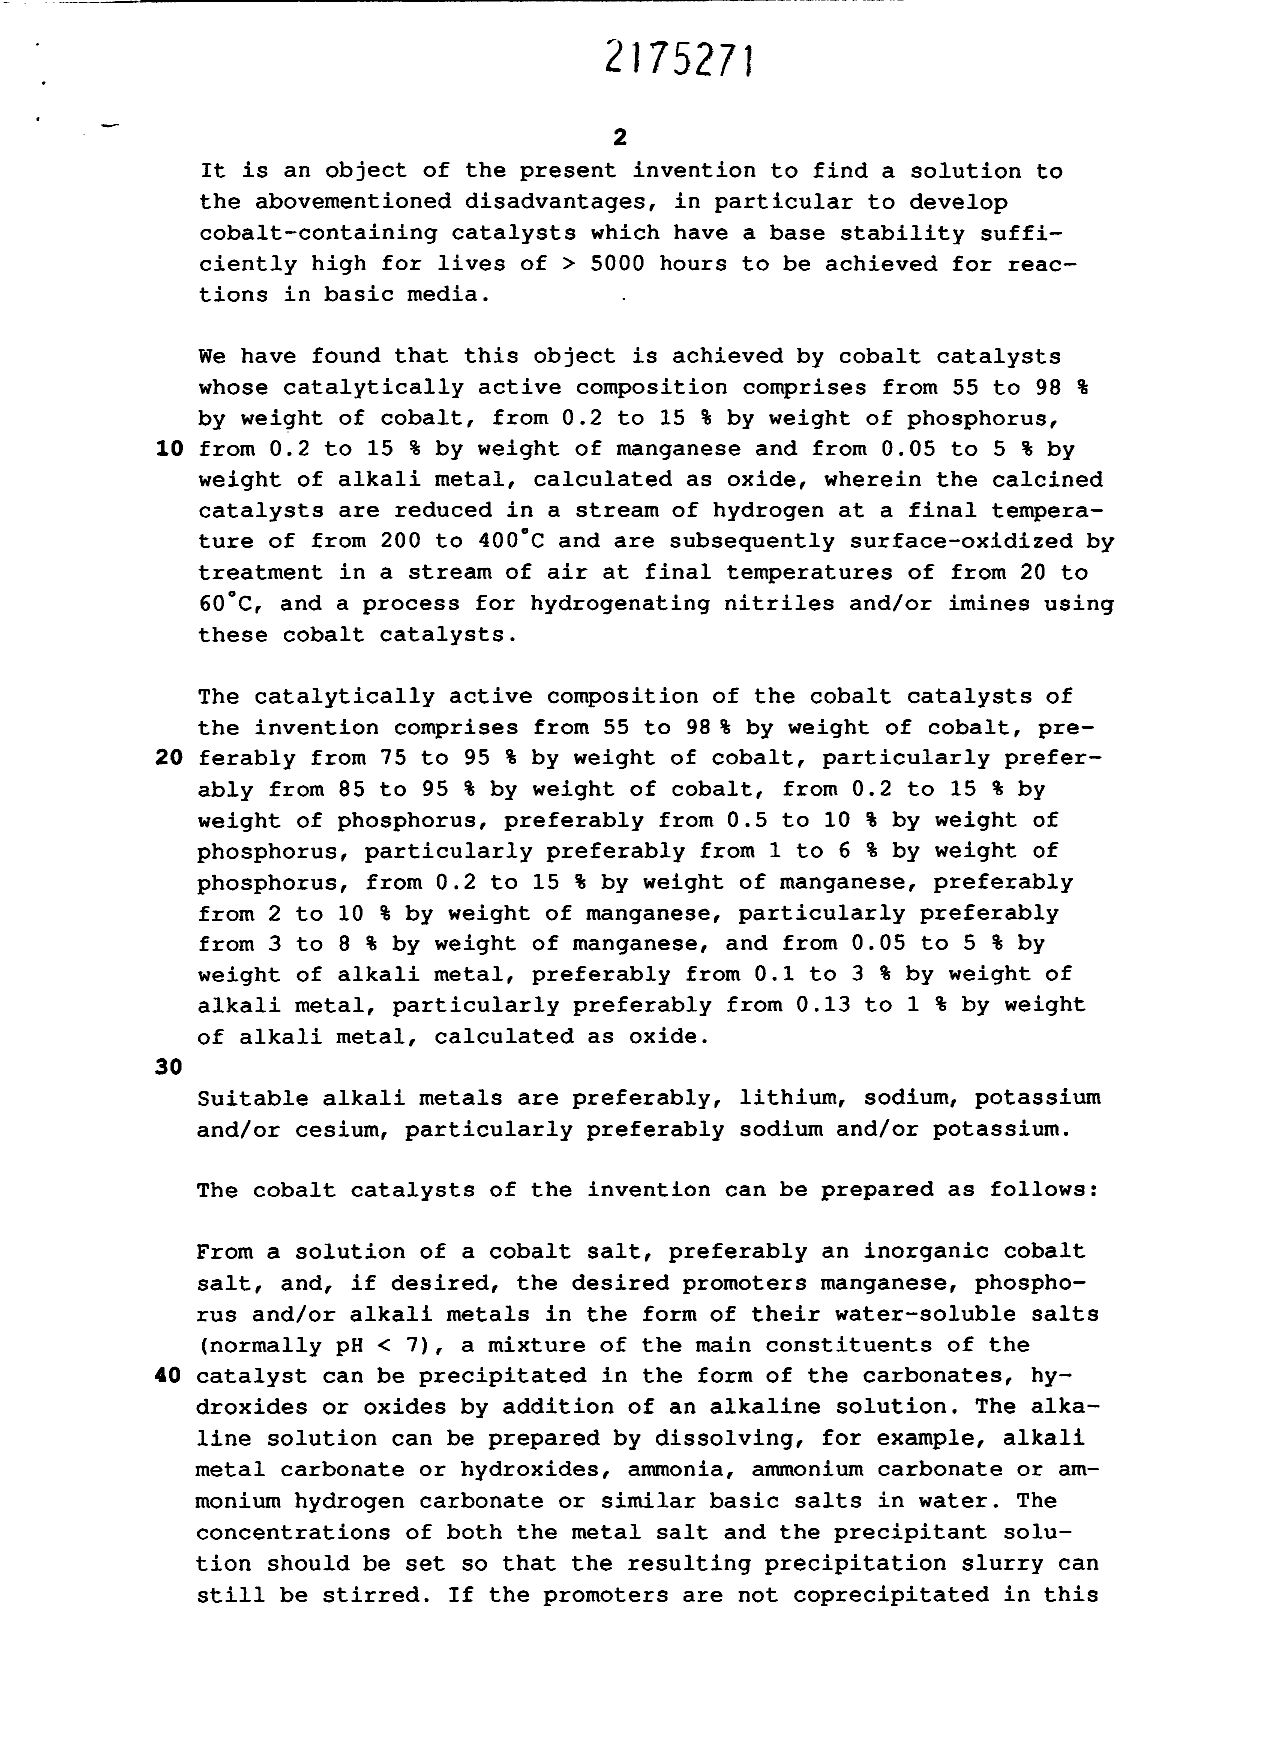 Canadian Patent Document 2175271. Description 19960429. Image 2 of 7